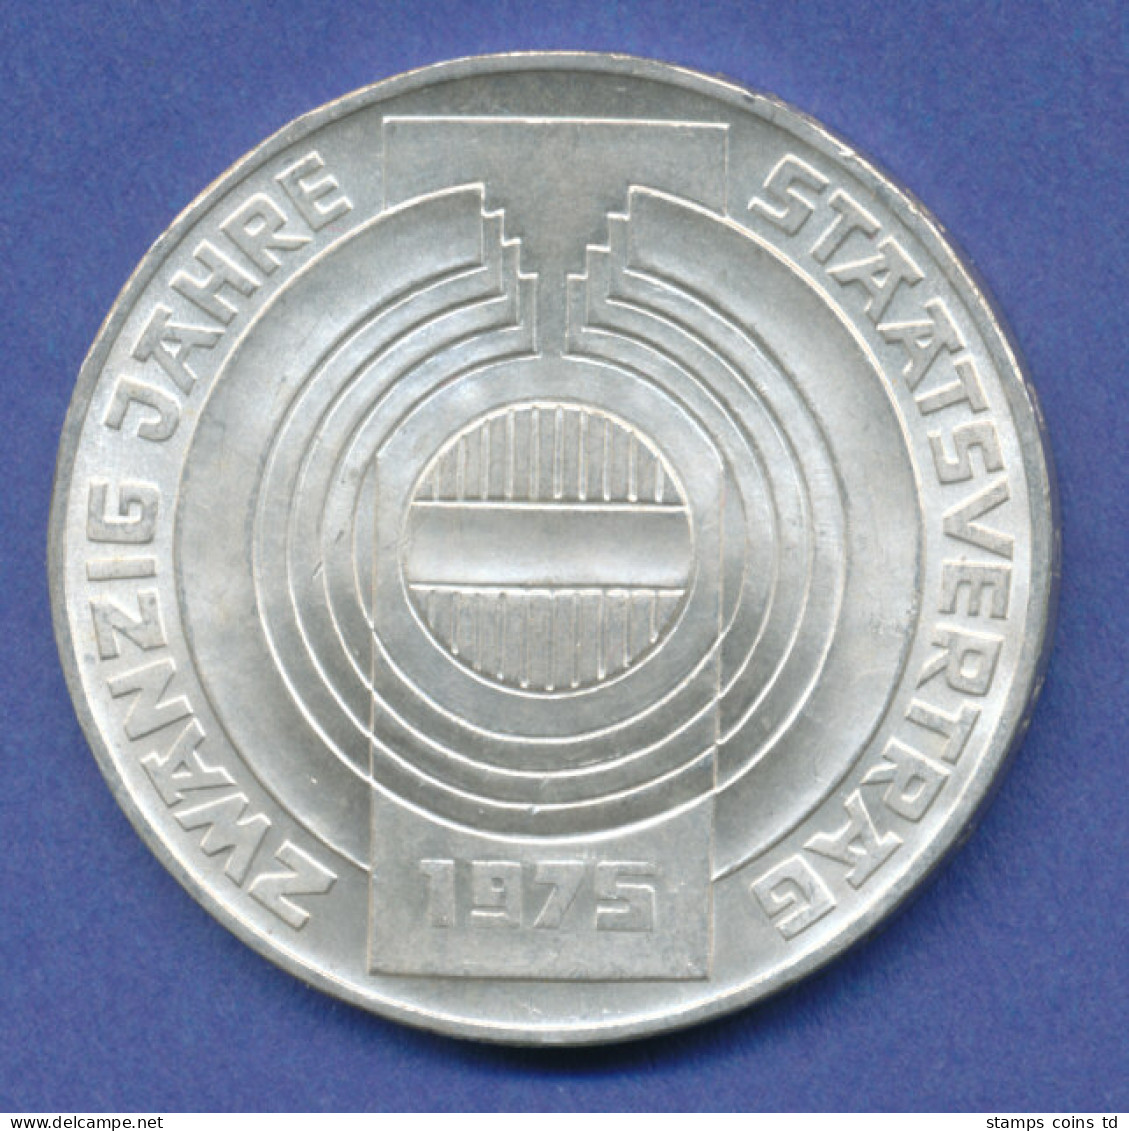 Österreich 100-Schilling Silber-Gedenkmünze 1975, 20 Jahre Staatsvertrag - Austria